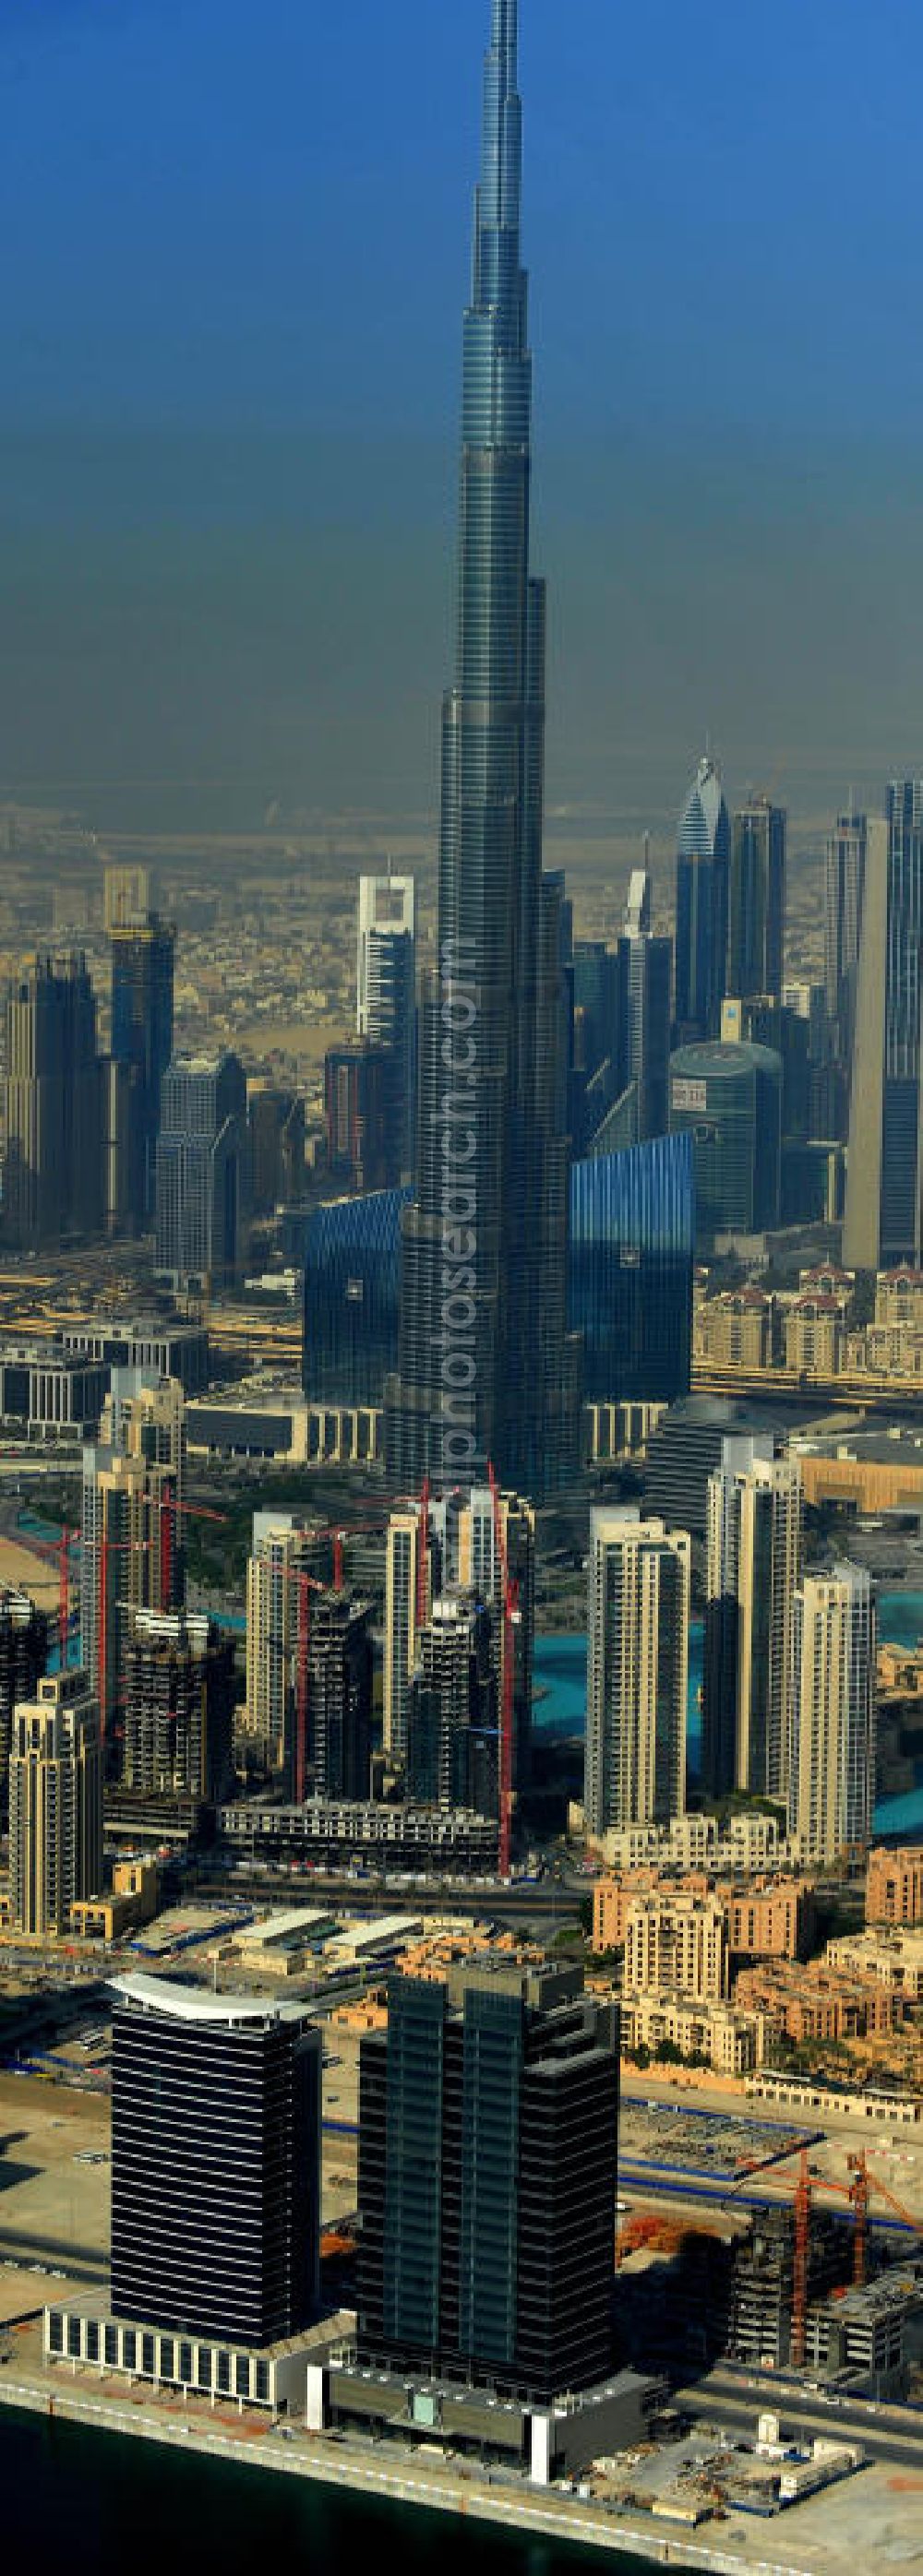 DUBAI / DUBAYY from the bird's eye view: Blick auf das Burj Khalifa in der Skyline von Dubai, dem derzeit höchsten Gebäude der Welt. Das Hochhaus wurde von der Projektgesellschaft Emaar Properties nach Plänen des Architekten Adrian Smith vom amerikanischen Architekturbüro Skidmore, Owings and Merrill gebaut. Das Hochhaus ist Mittelpunkt von Downtown Dubai, eines neuen Stadtentwicklungsgebietes. In den unteren 37 der allgemein nutzbaren 163 Etagen ist das weltweit erste Armani-Hotel eingezogen. Einige tausend Tonnen Stahl in den oberen Geschossen sind Recycling-Stahl aus dem abgerissenen Palast der Republik in Berlin. Die Firma Bauer Spezialtiefbau als Subunternehmer bei der Fundamentlegung. Der verarbeitungsfertige flüssige Beton wurde mit Hochleistungsbetonpumpen der Firma Putzmeister auf die jeweilige Arbeitshöhe transportiert. Skyscraper Burj Khalifa, currently the tallest building in the world.